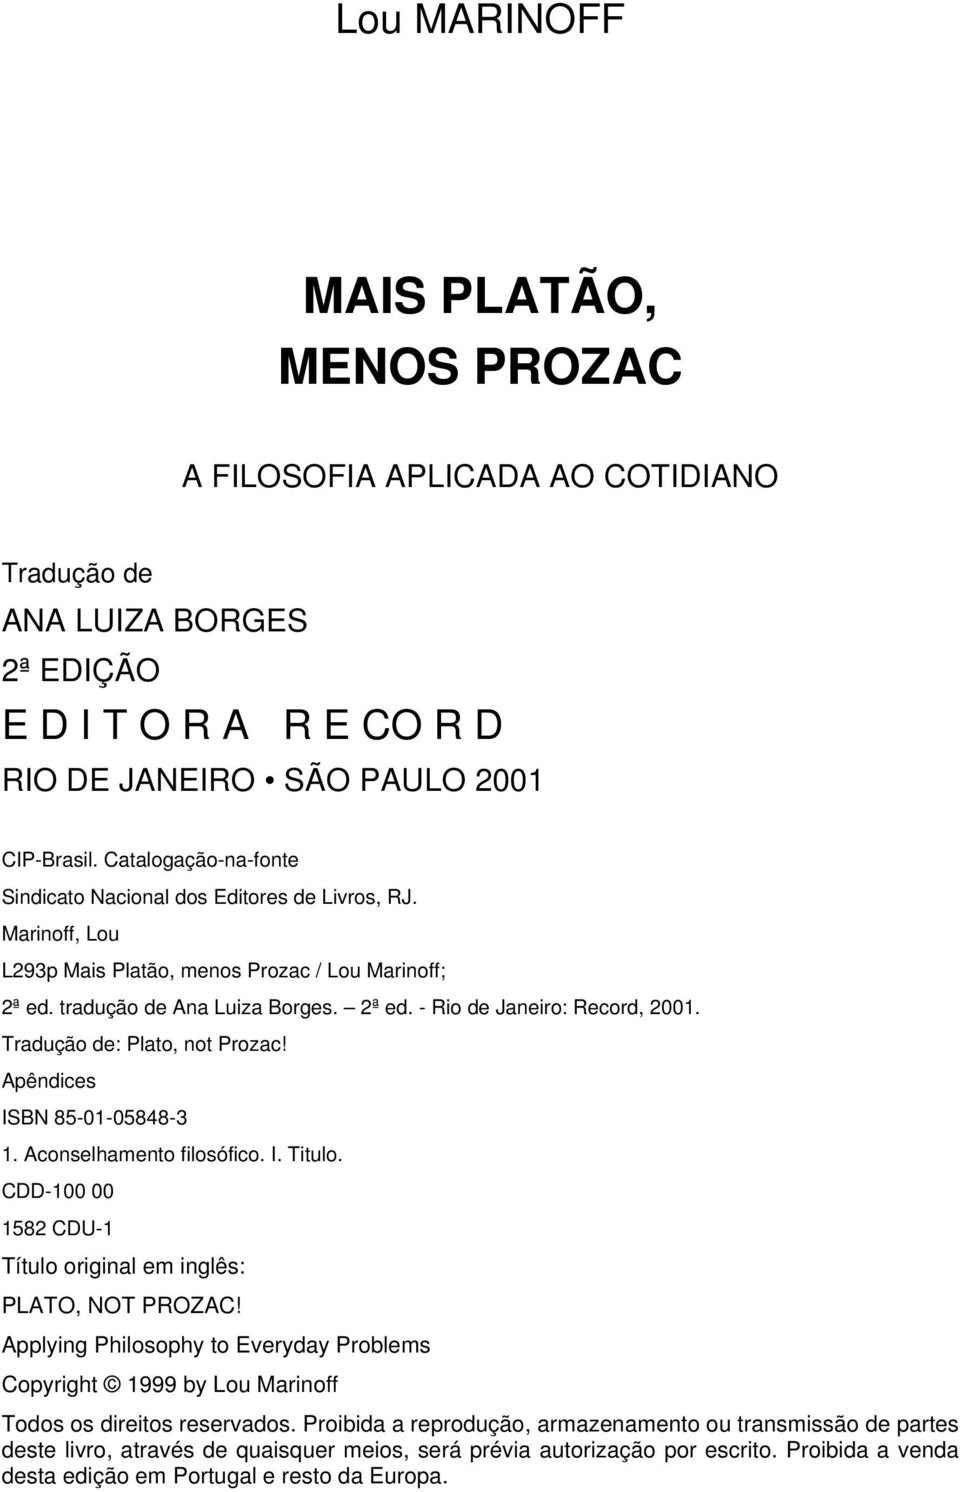 MAIS PLATÃO, MENOS PROZAC - PDF Download grátis